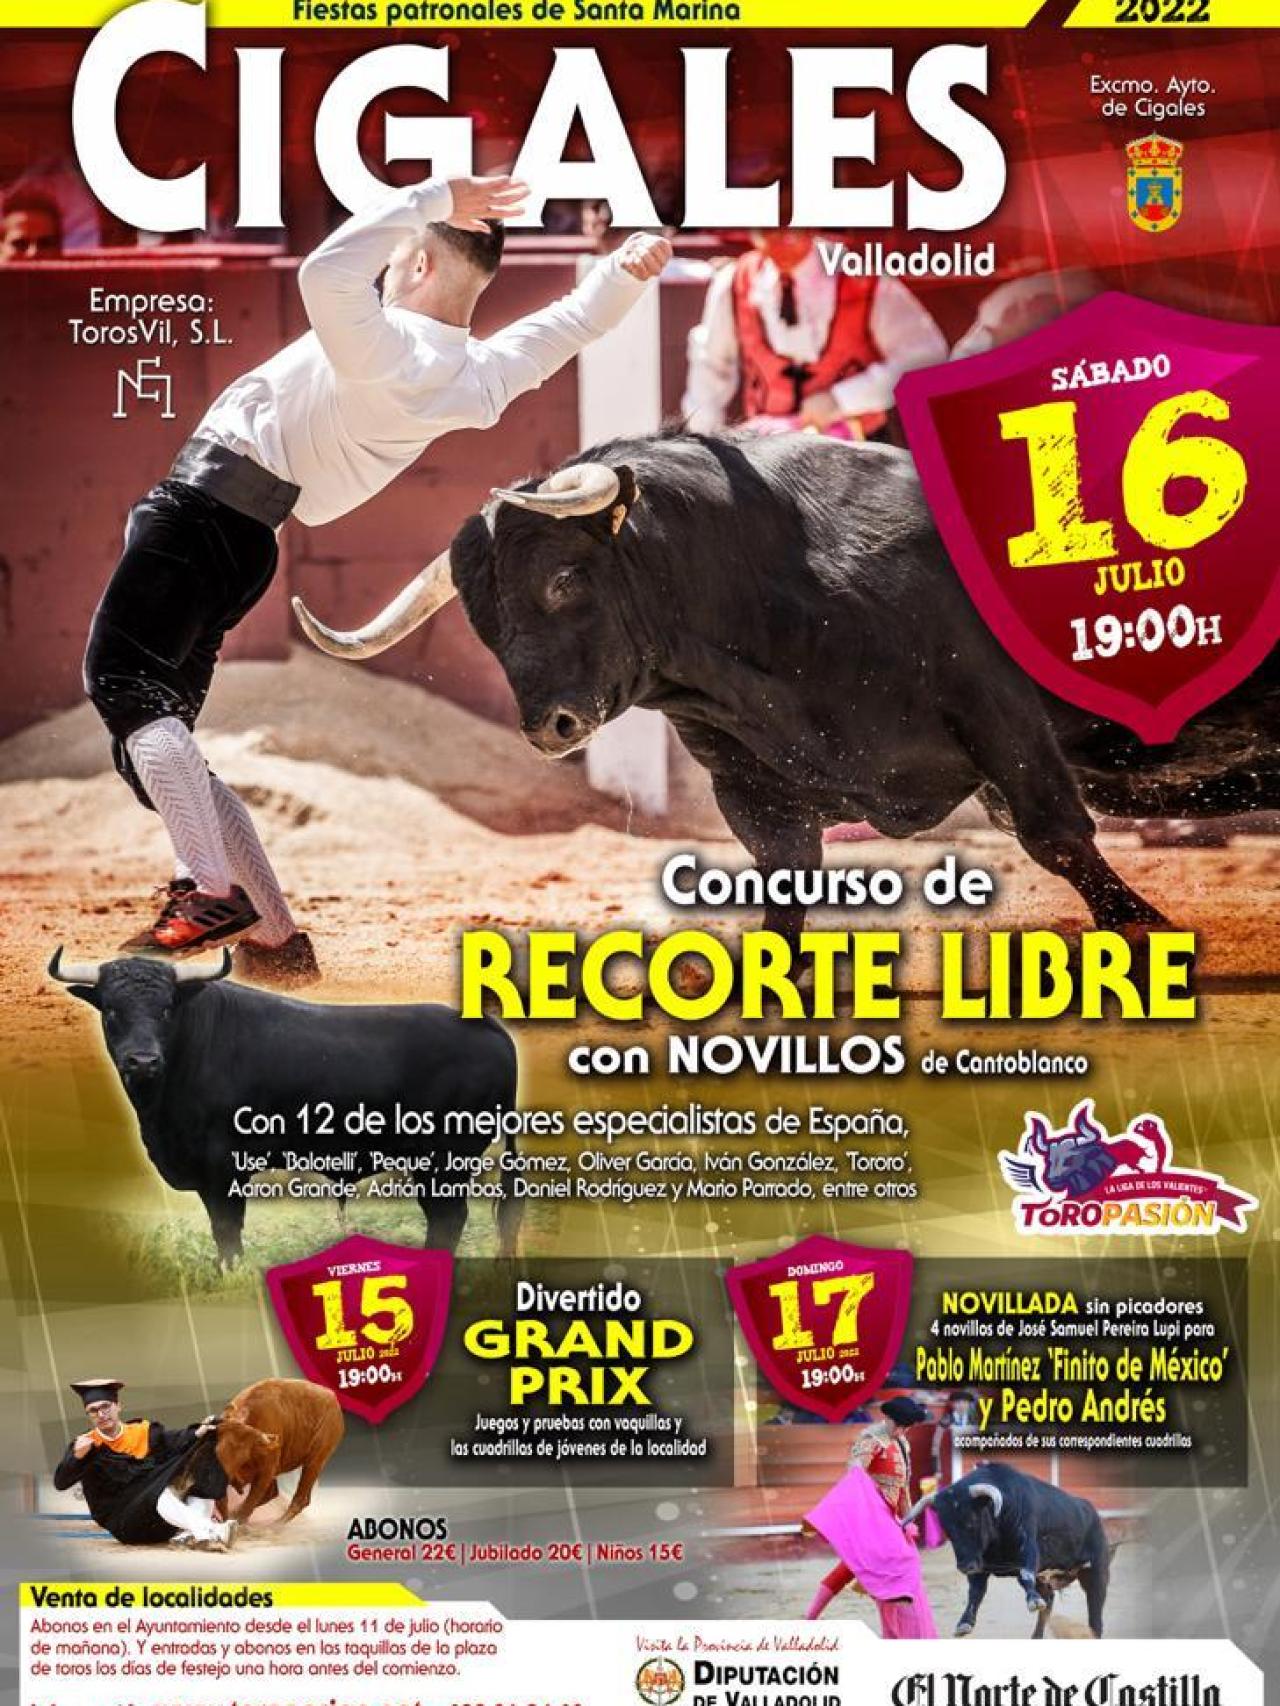 Cartel de los festejos taurinos en Cigales